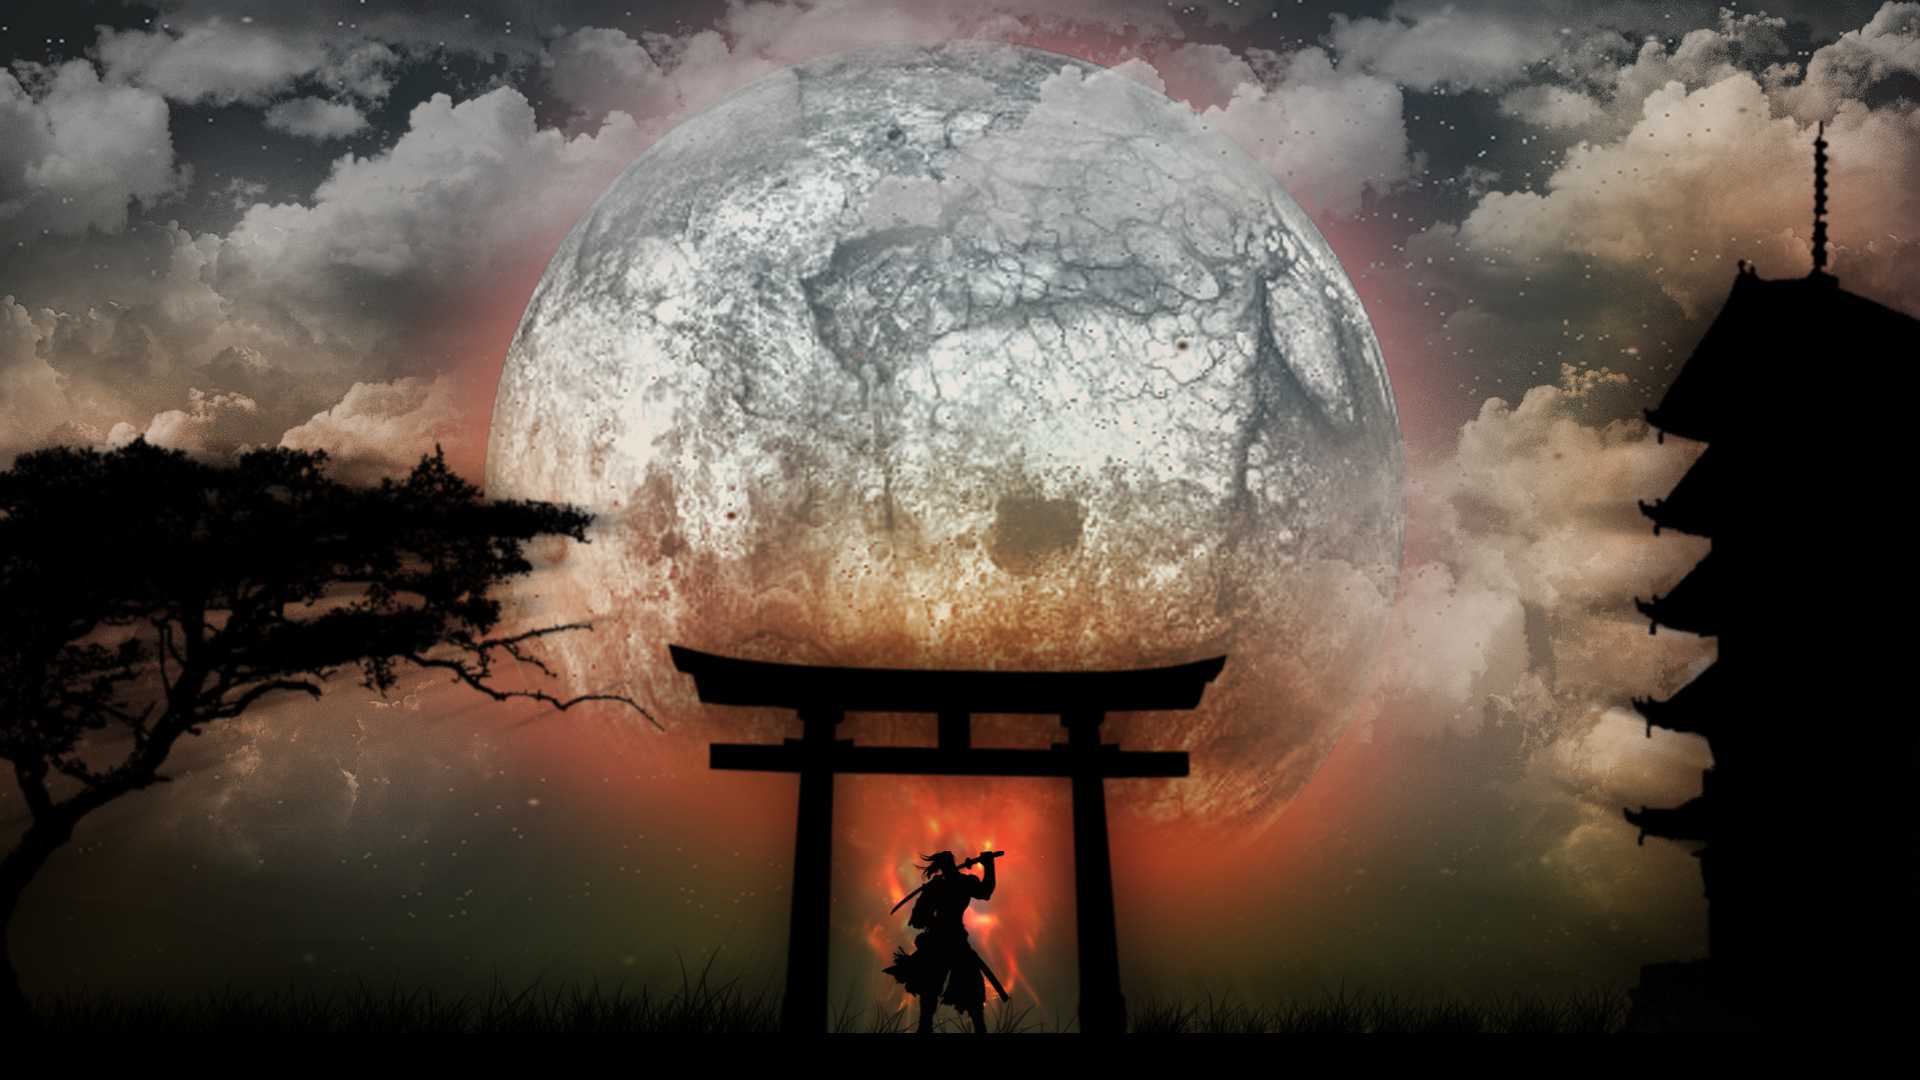 Japan, Moon, samurai, drawings - desktop wallpaper